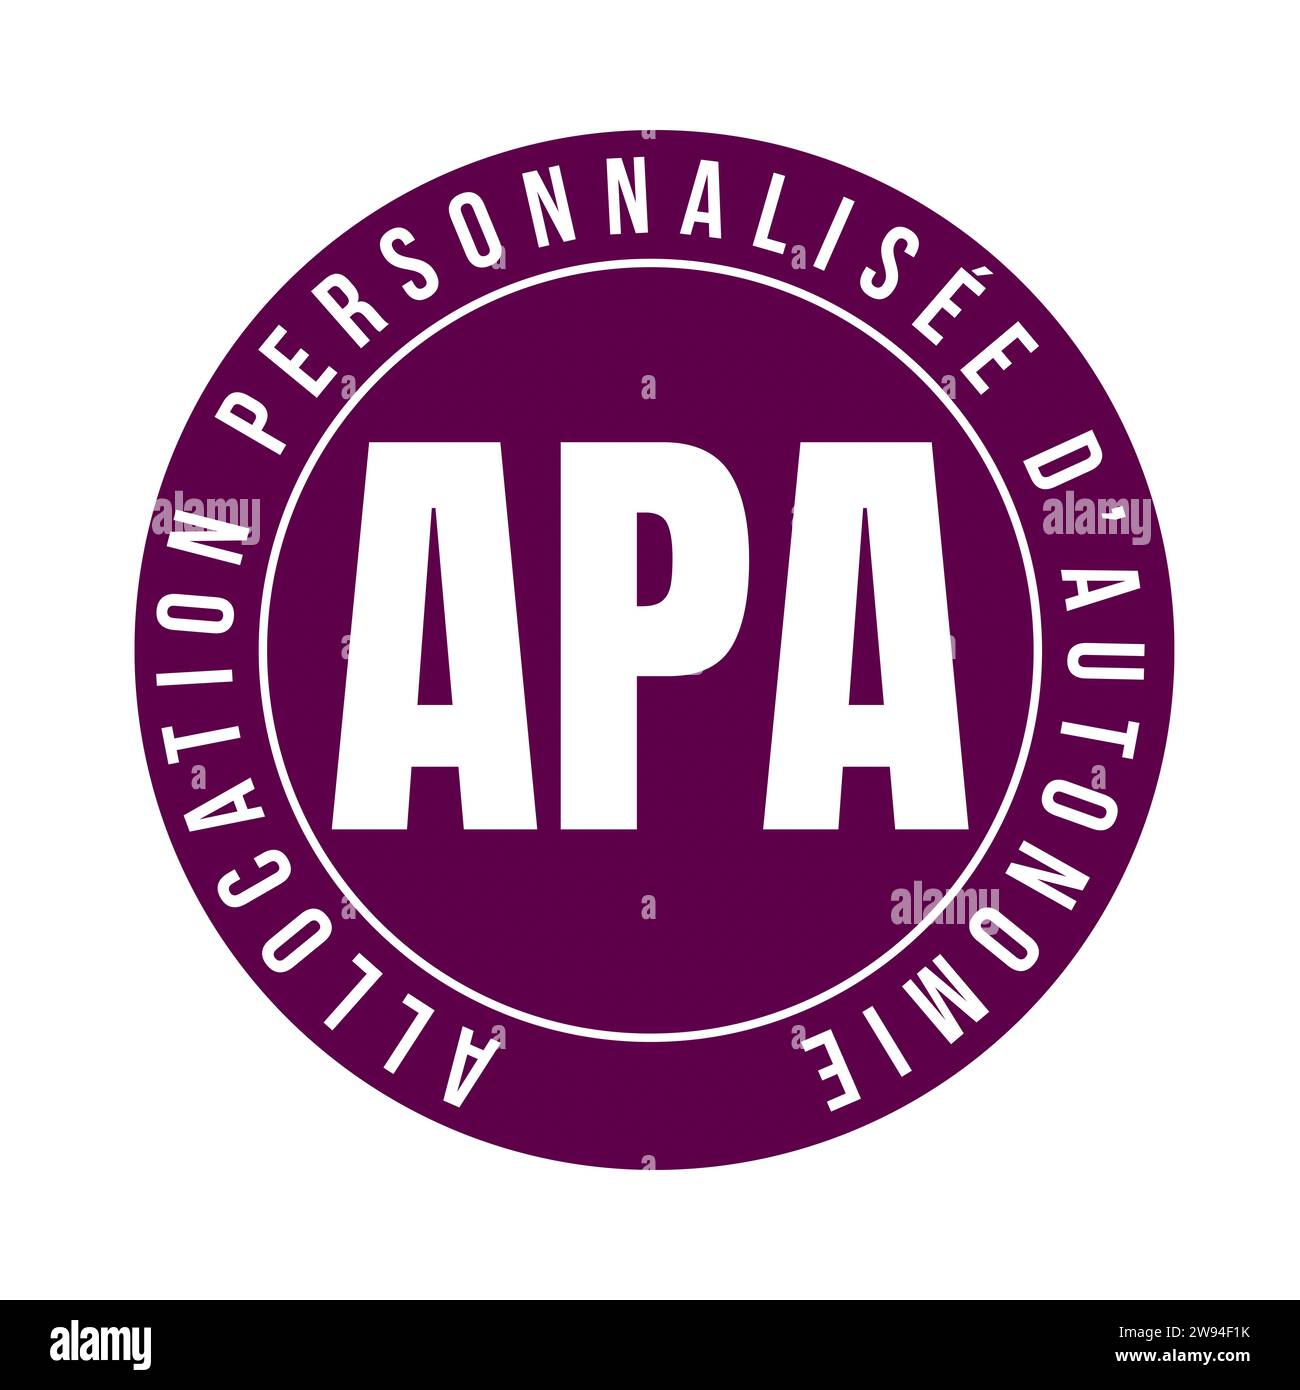 Icona del simbolo di indennità di autonomia personalizzata denominata APA Allocation personnalisee d'autonomie in francese Foto Stock